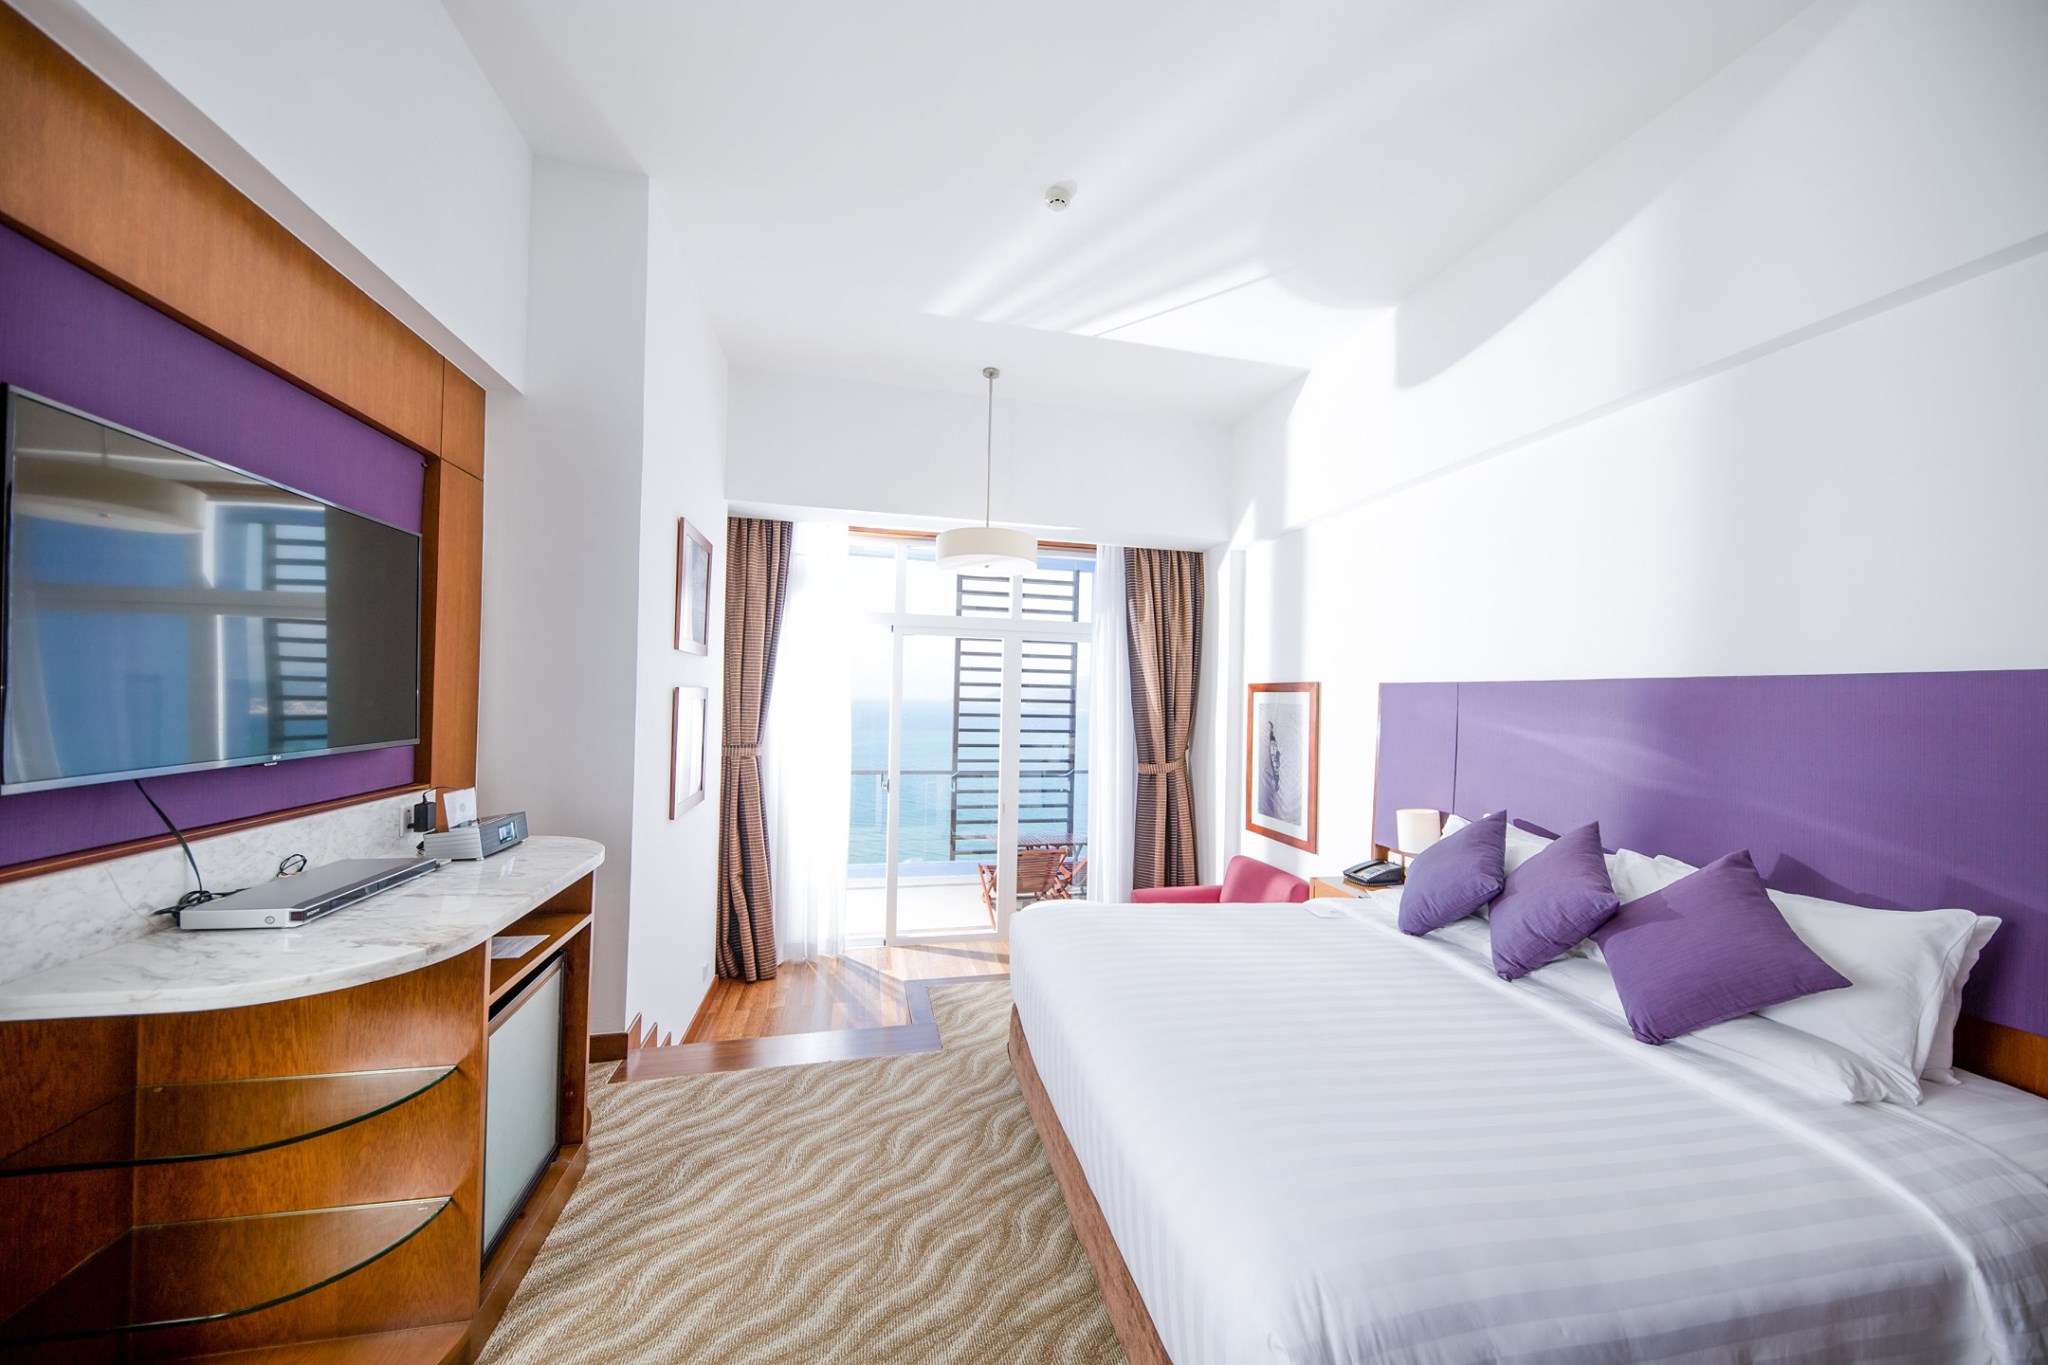 Khách sạn Novotel Nha Trang khuyến mãi hấp dẫn cho khách du lịch